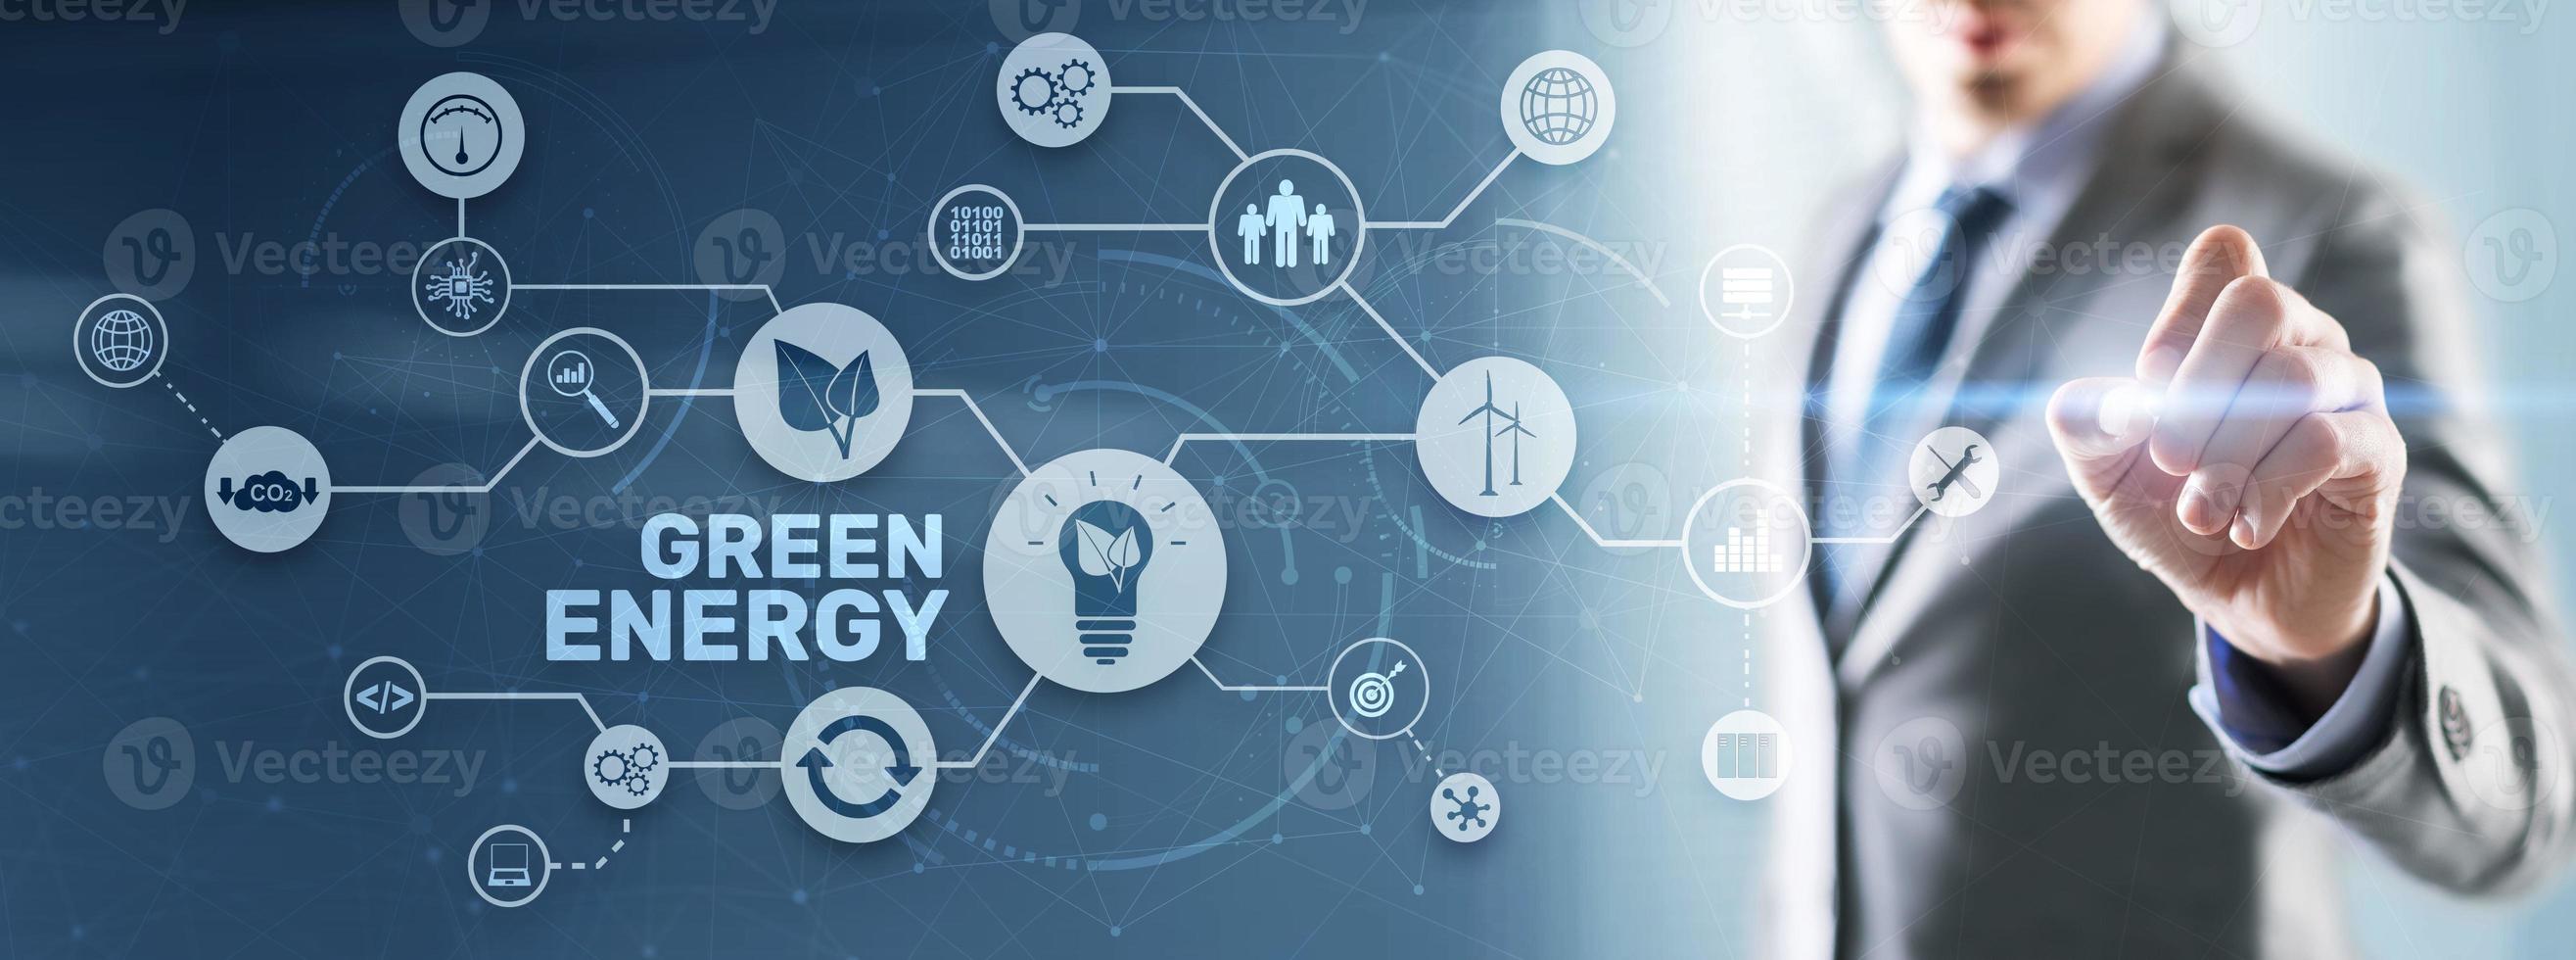 energía verde ecología natural potencia eléctrica velocidad creative. concepto de ecología de tecnología foto